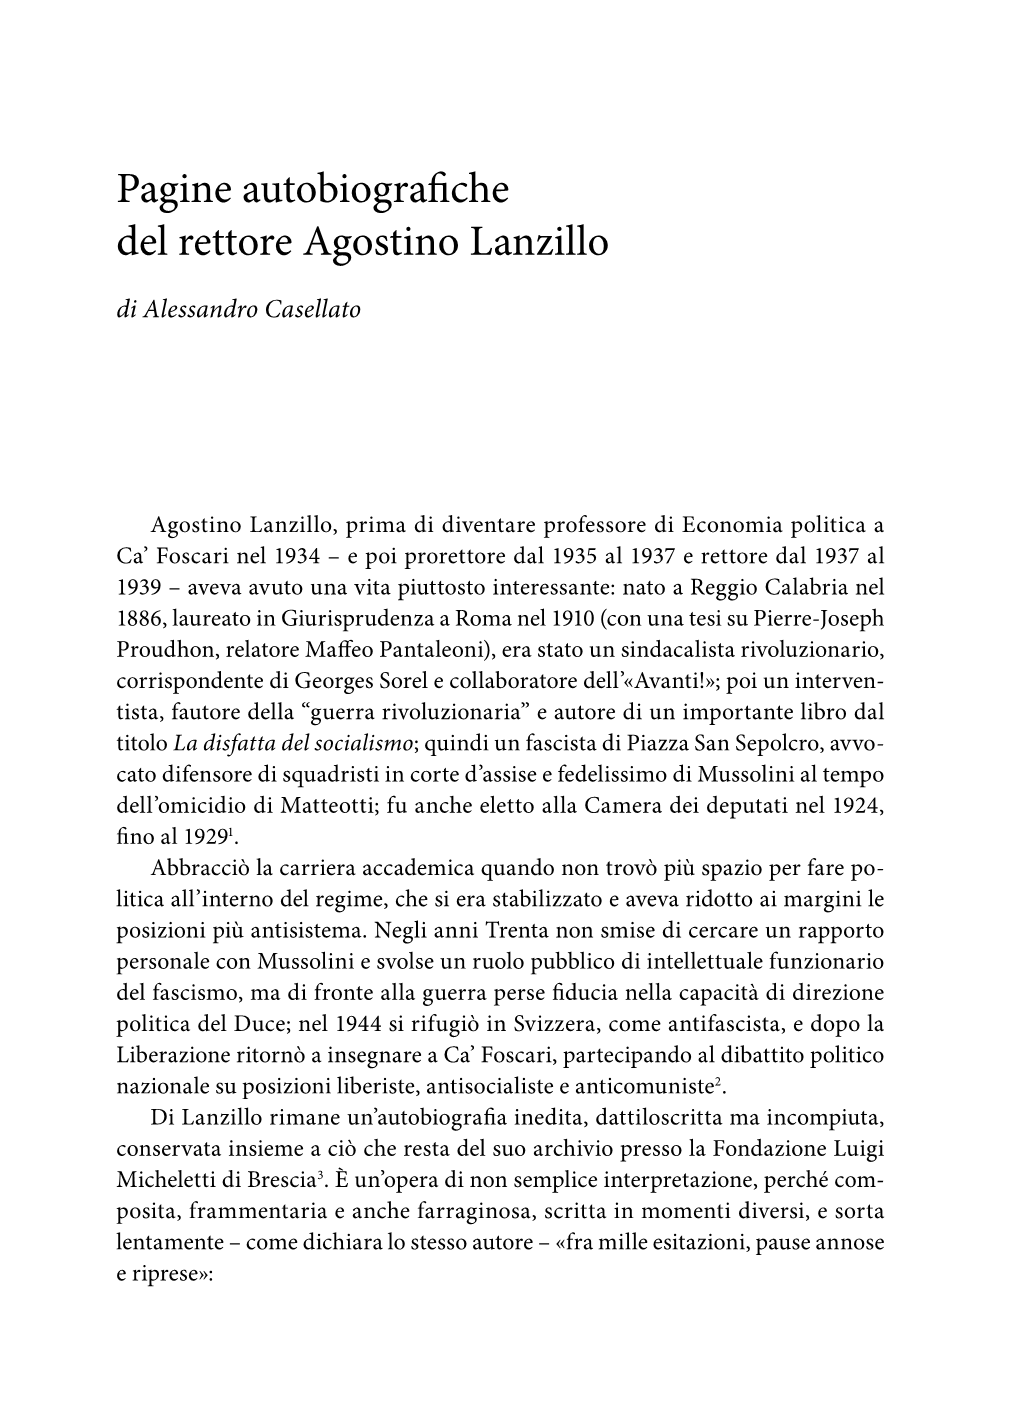 Pagine Autobiografiche Del Rettore Agostino Lanzillo Di Alessandro Casellato